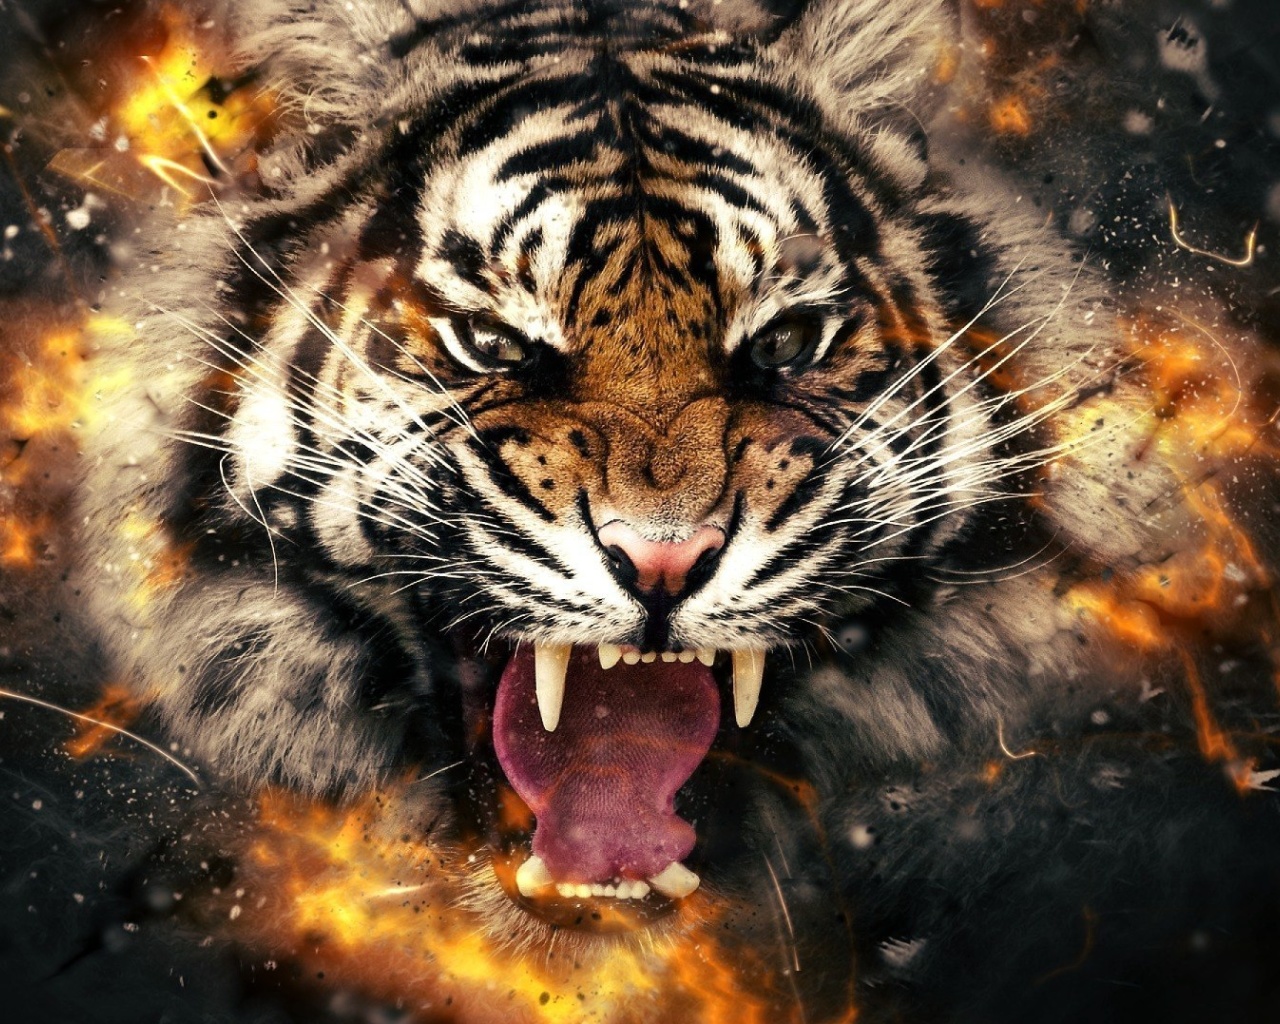 Das Fire Tiger Wallpaper 1280x1024